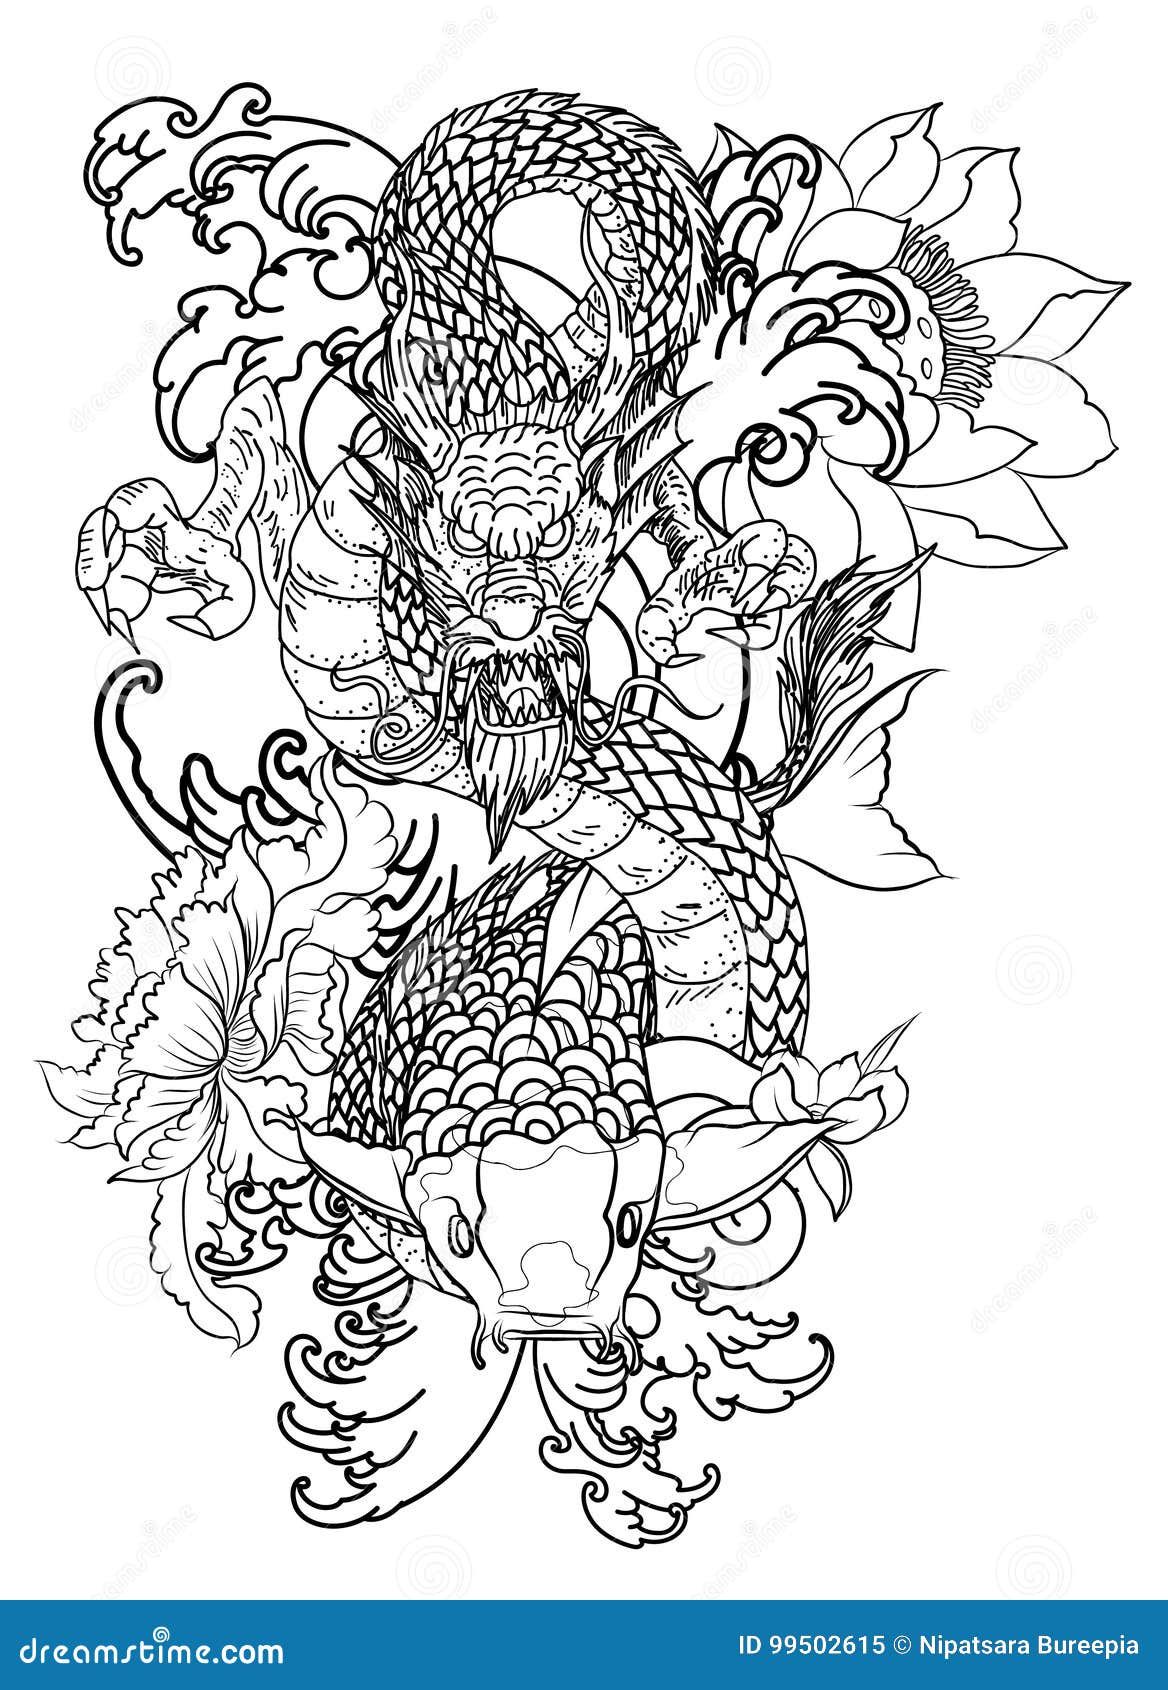 dragon koi fish tattoo forearm